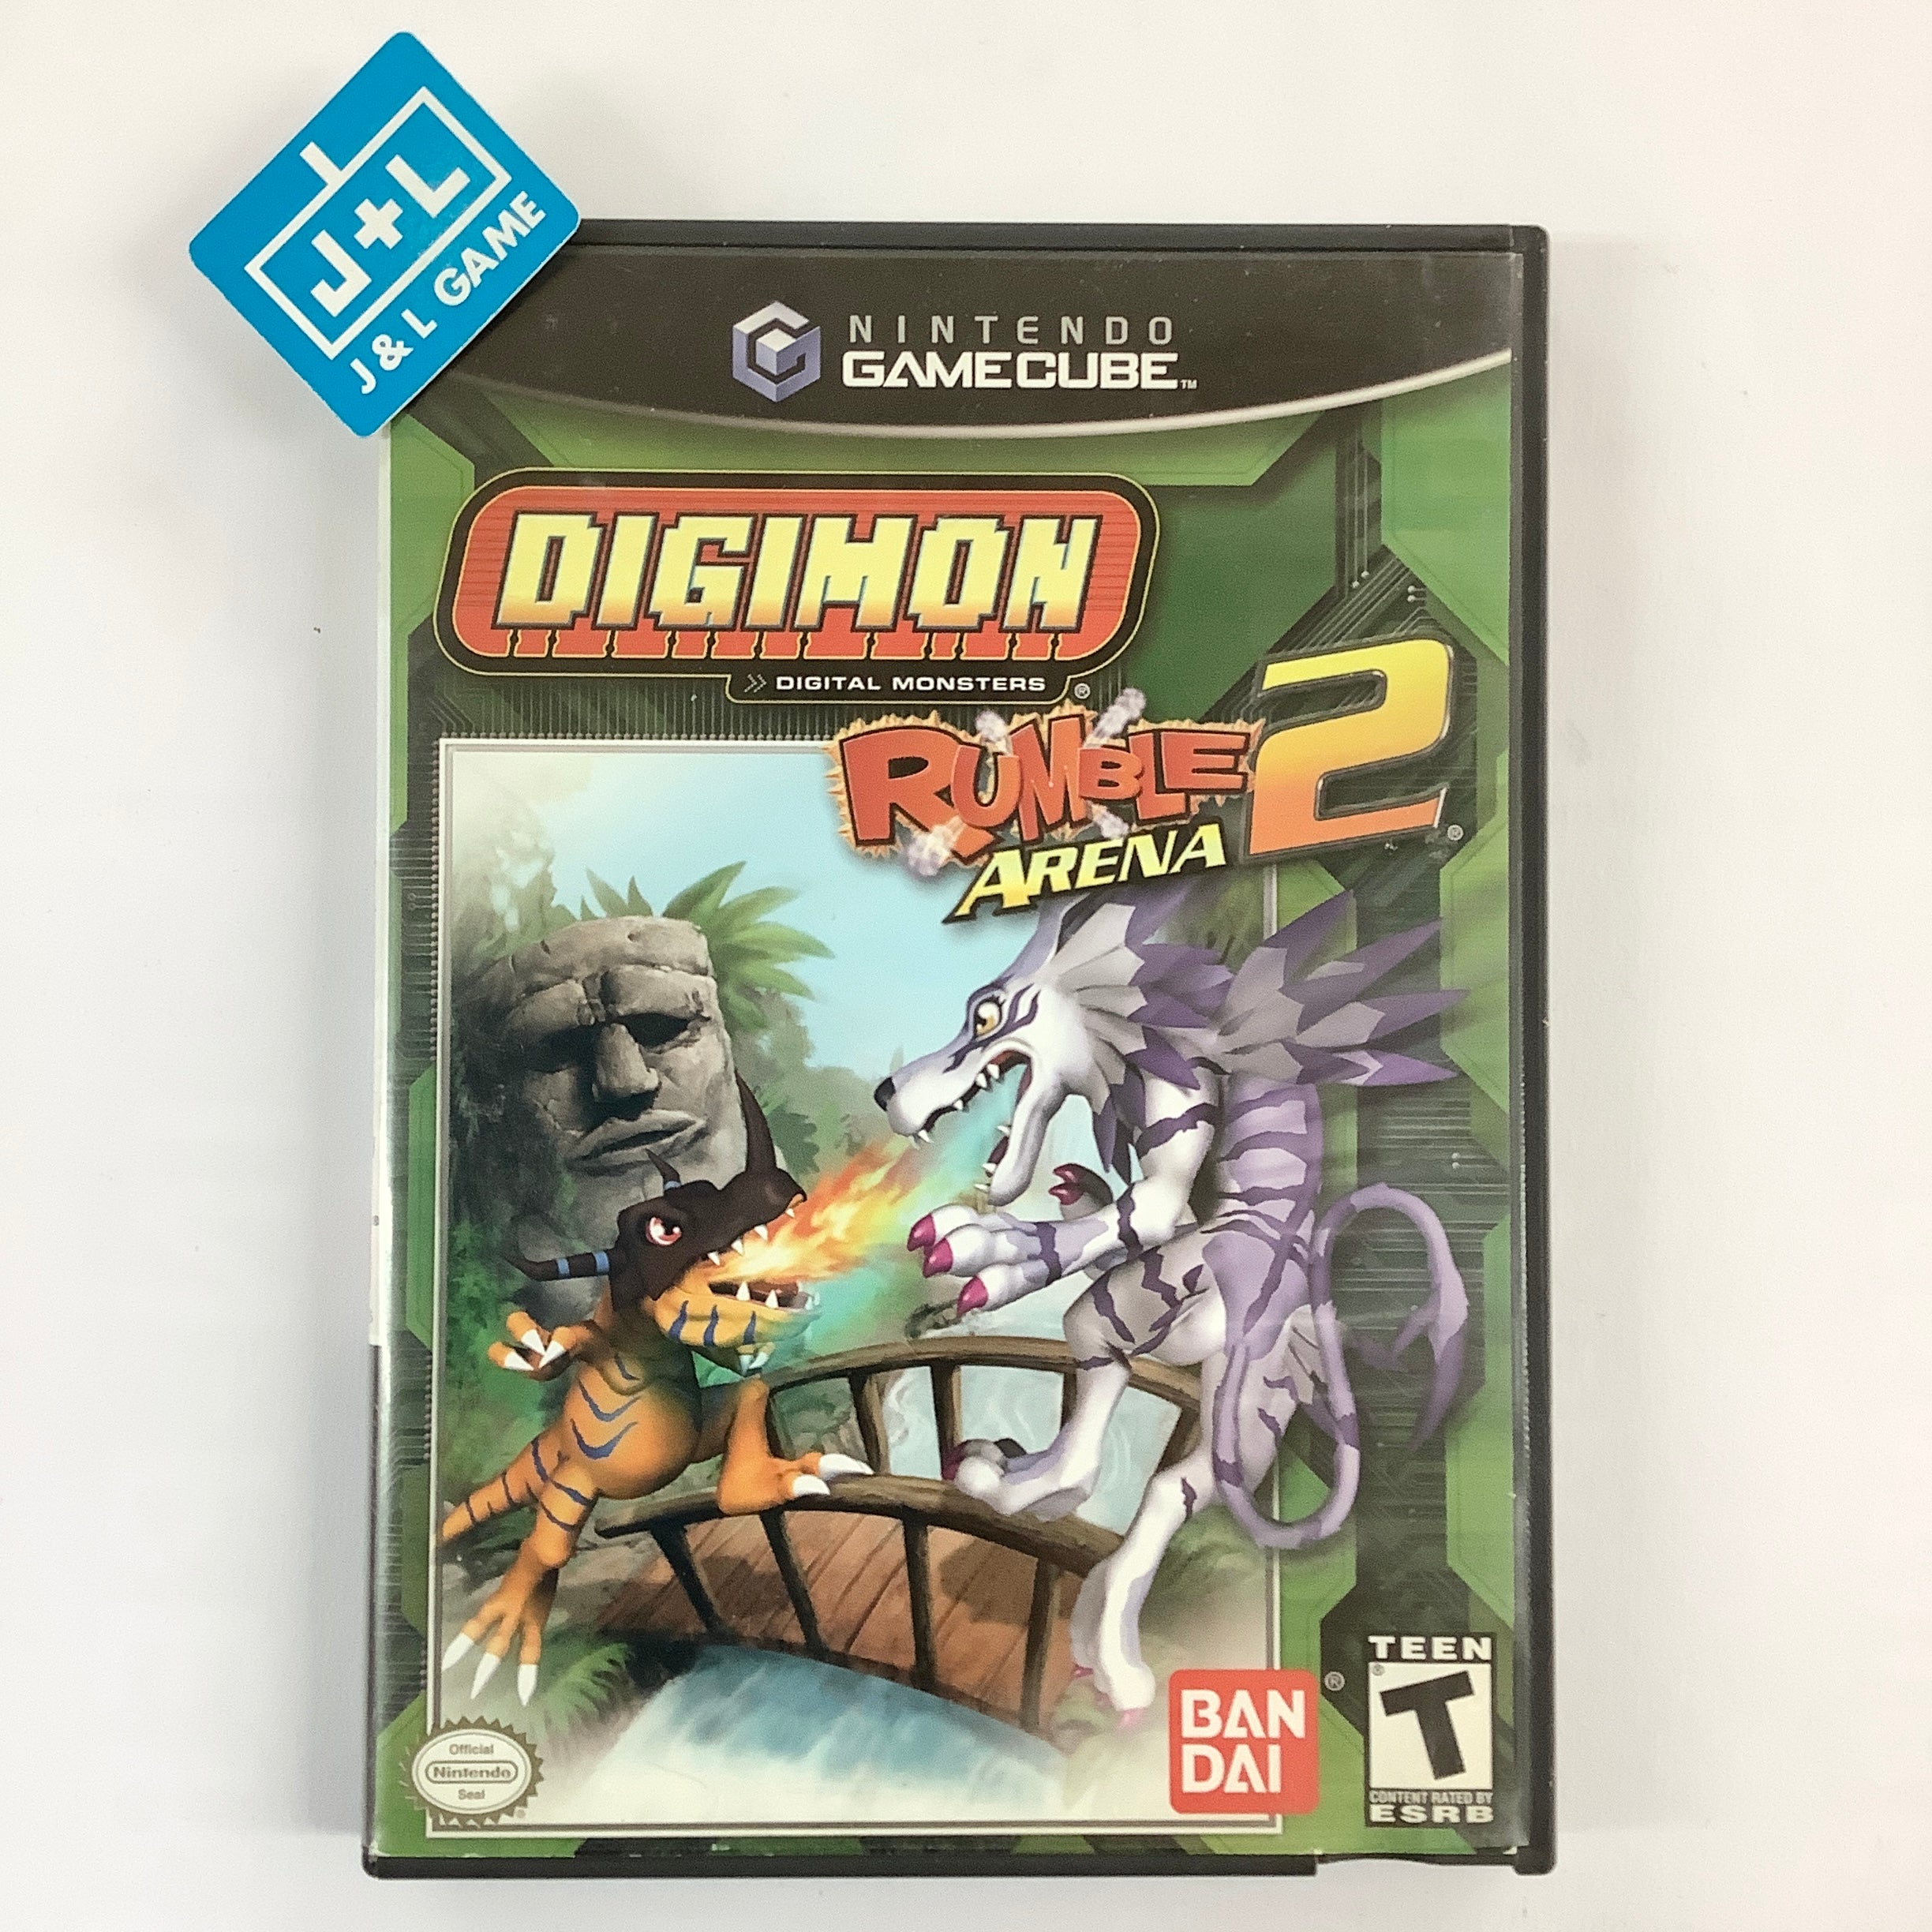 Digimon Rumble Arena 2 - (GC) GameCube [Pre-Owned] Video Games Bandai   